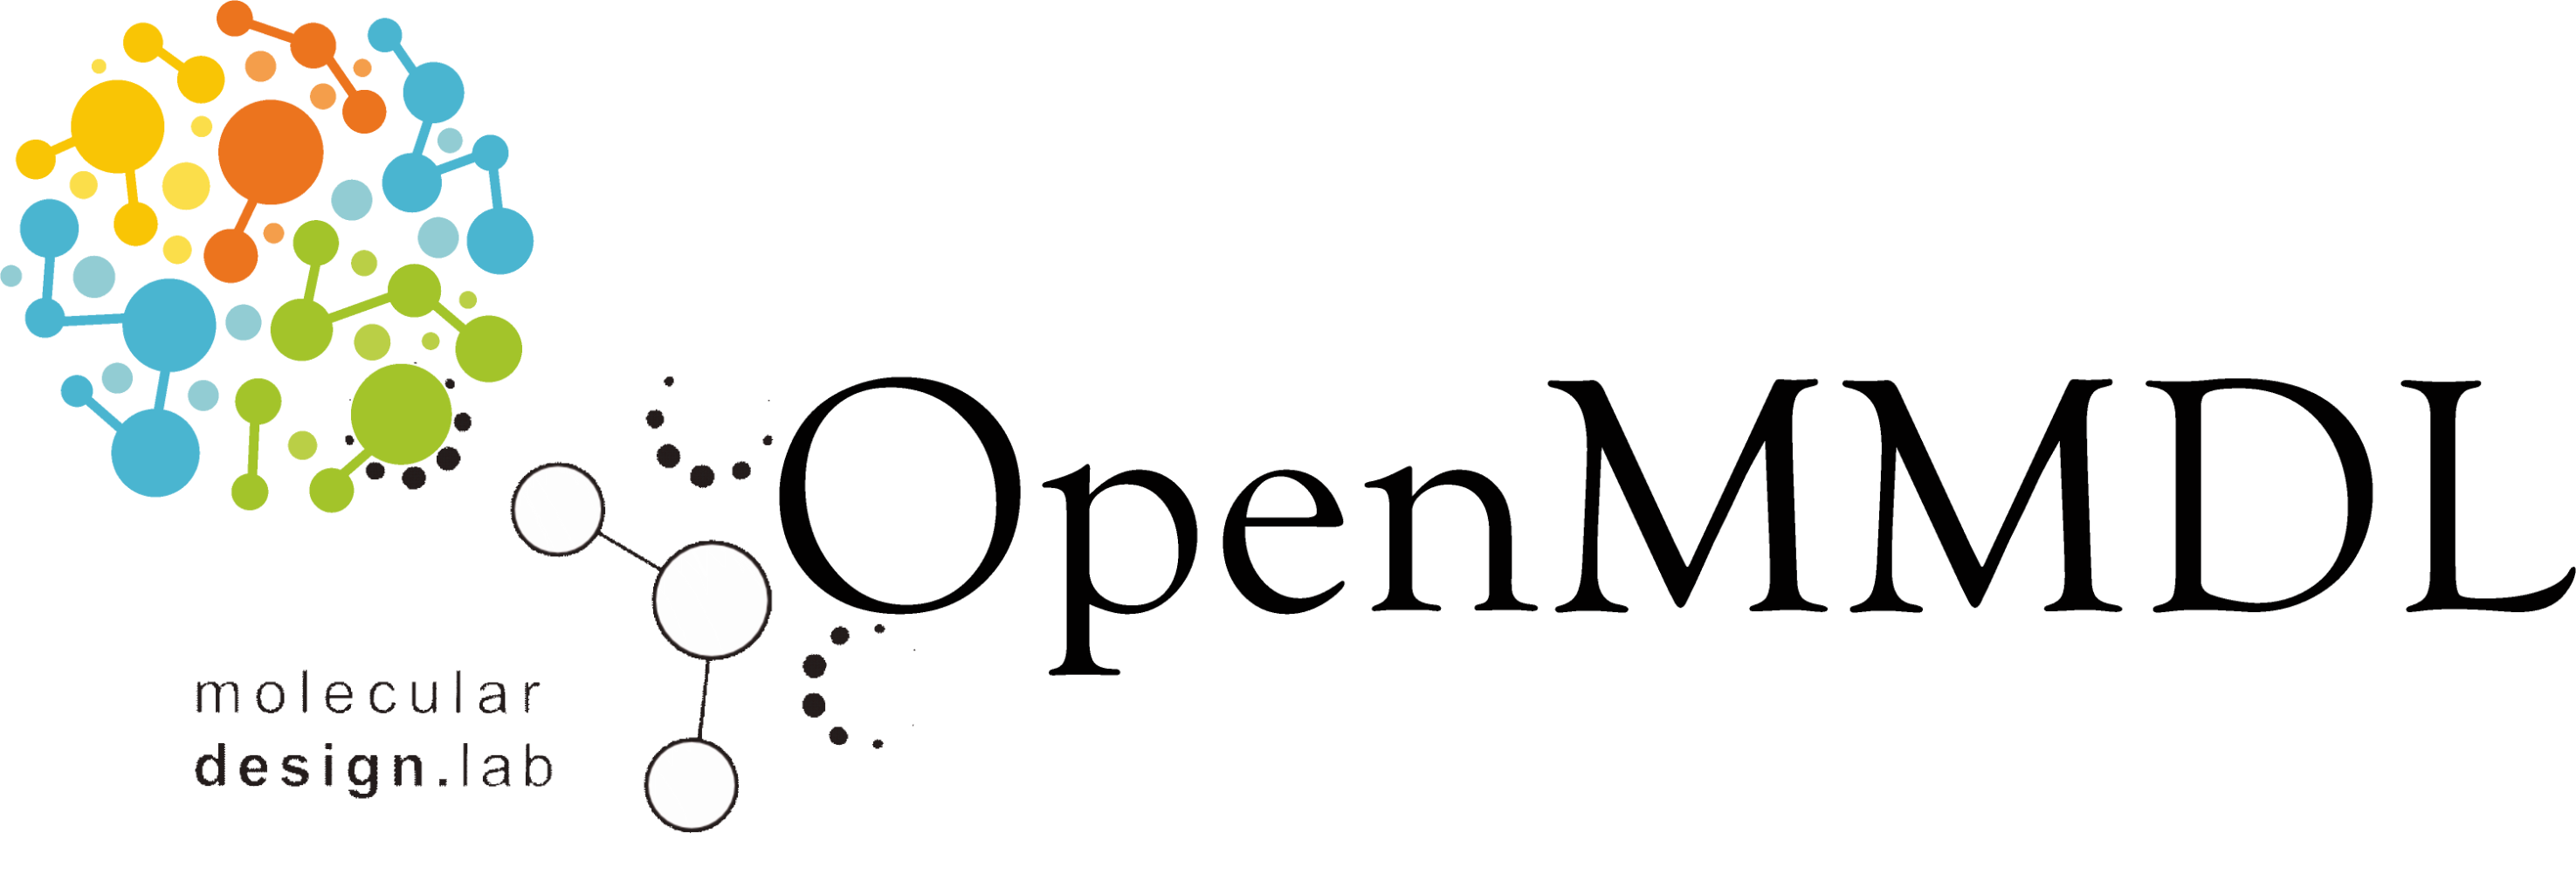 OpenMMDL_logo_2.png